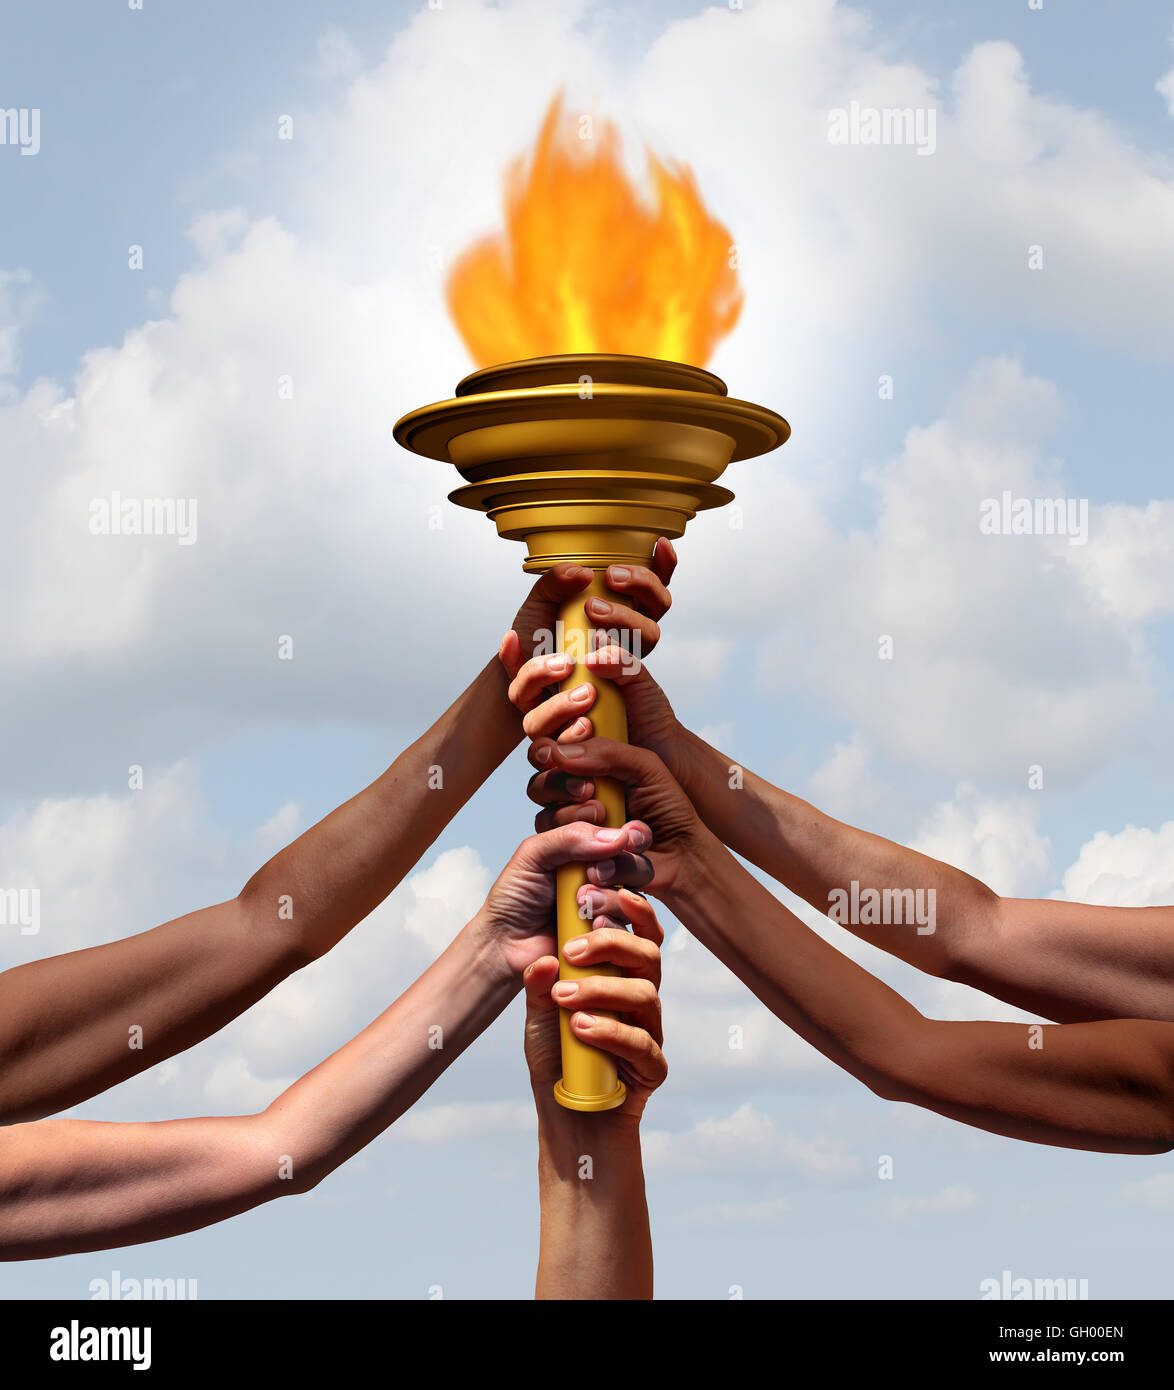 Menschen halten eine Fackel Flammensymbol als eine Gruppe von verschiedenen Athleten oder Community-Mitglieder mitmachen heben ein Feuerkorb-Objekt zusammen für Sport Feier oder ein leuchtendes Beispiel für Freundschaft mit 3D Abbildung Elemente. Stockfoto